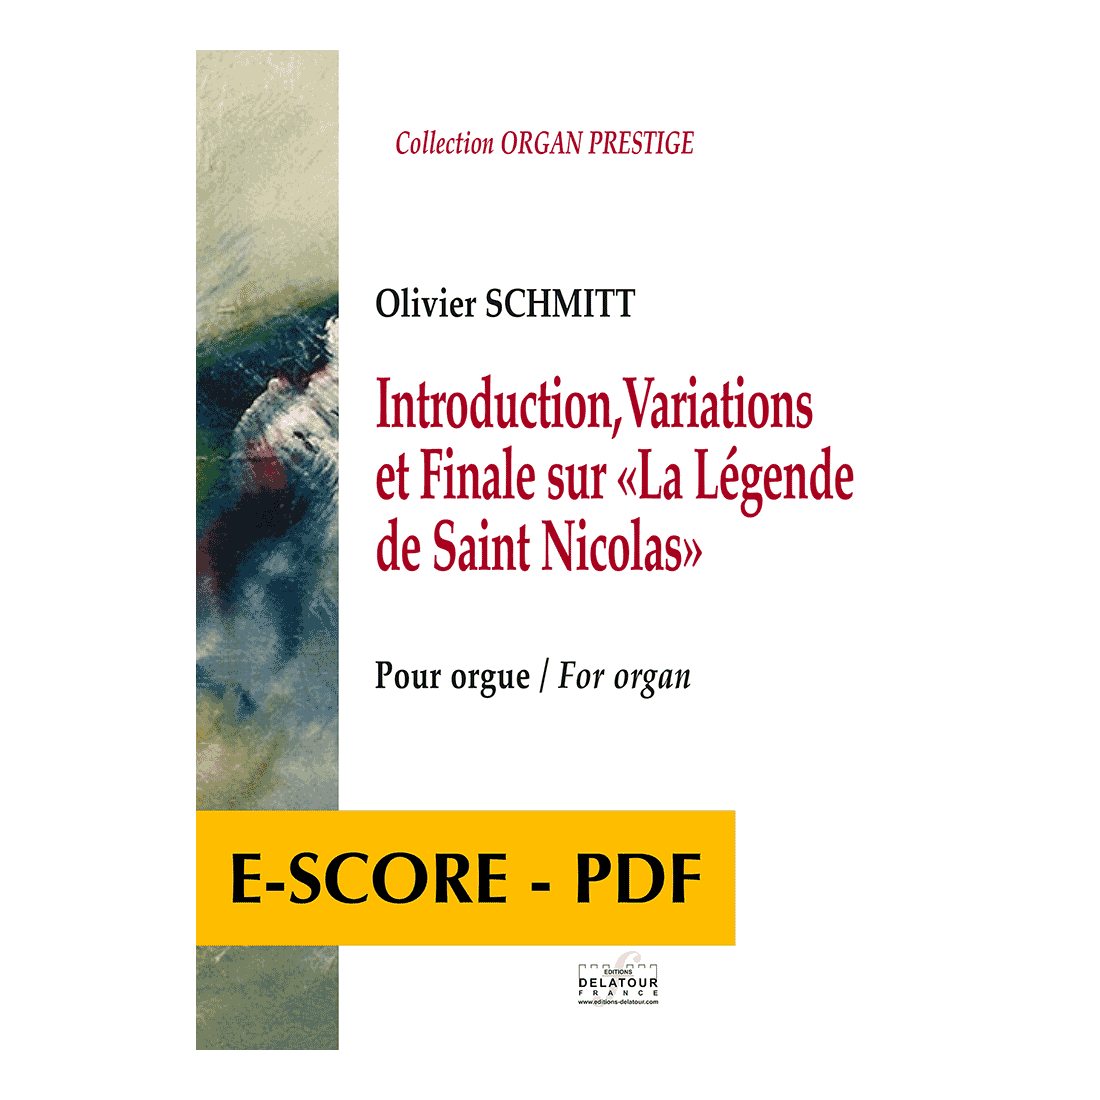 Introduction, Variations et Finale sur « La légende de Saint Nicolas » for organ - E-score PDF